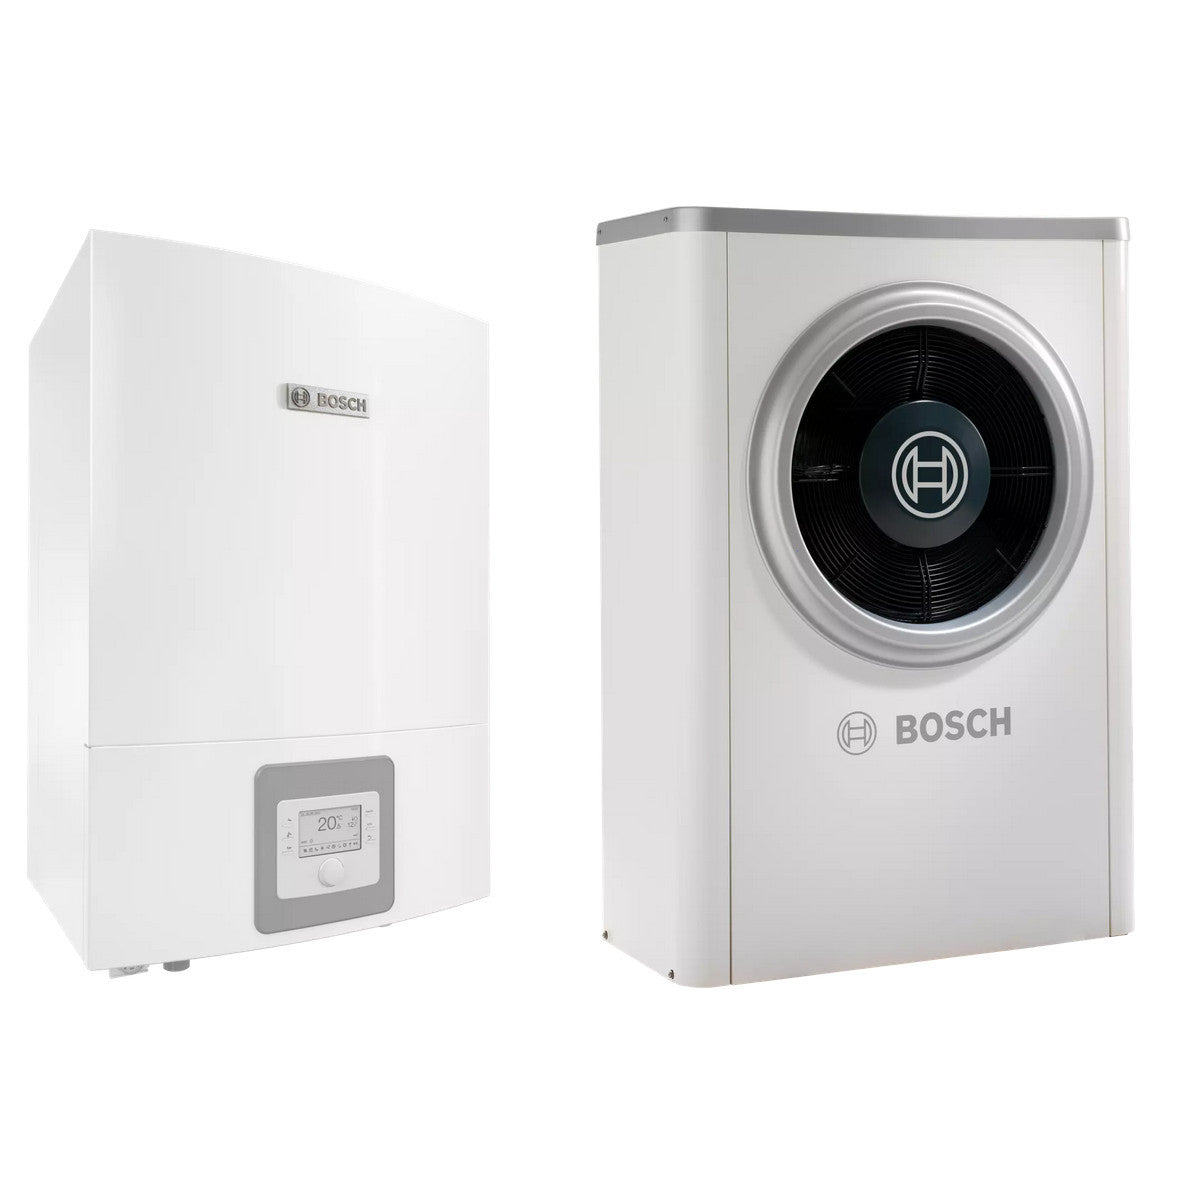 Bosch Compress 6000 AWB+AW-7 levegő-víz hőszivattyú monoblok, fűtőbetét nélkül, R410A-0